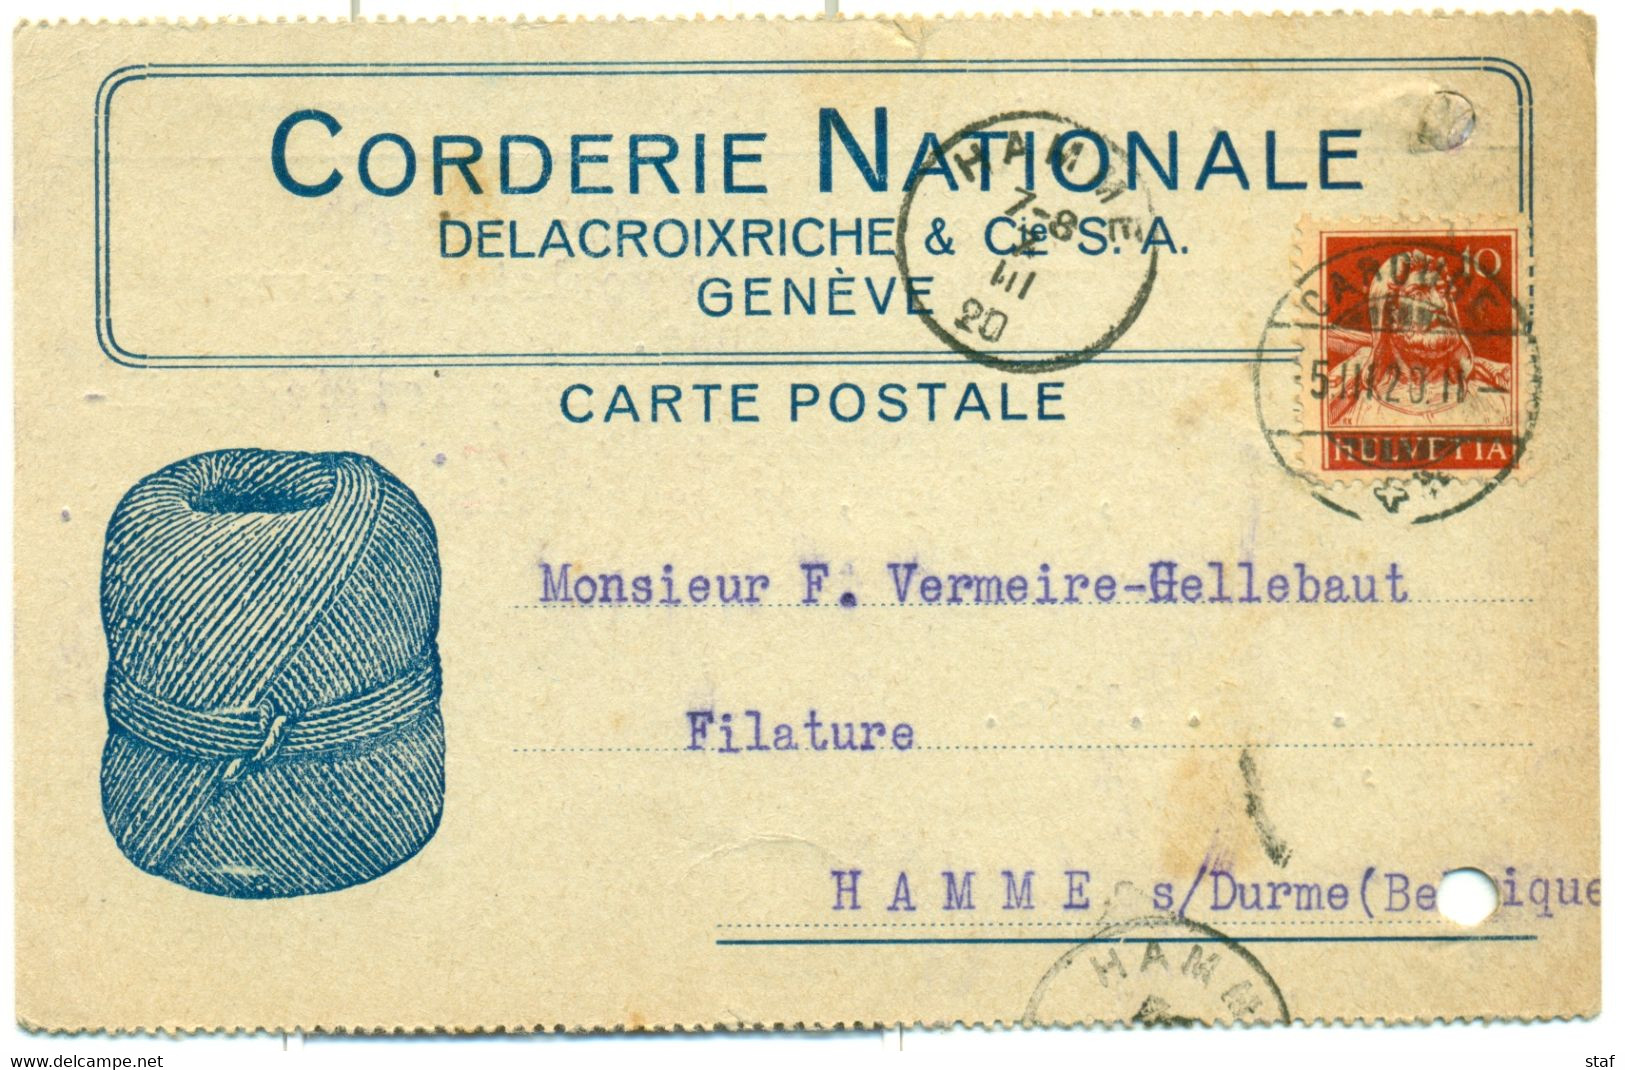 Carte Postale De La Corderie Nationale  Delacroixriche & Cie à Genève - Cachet De La Poste Caroube - 1920 !! - Suisse